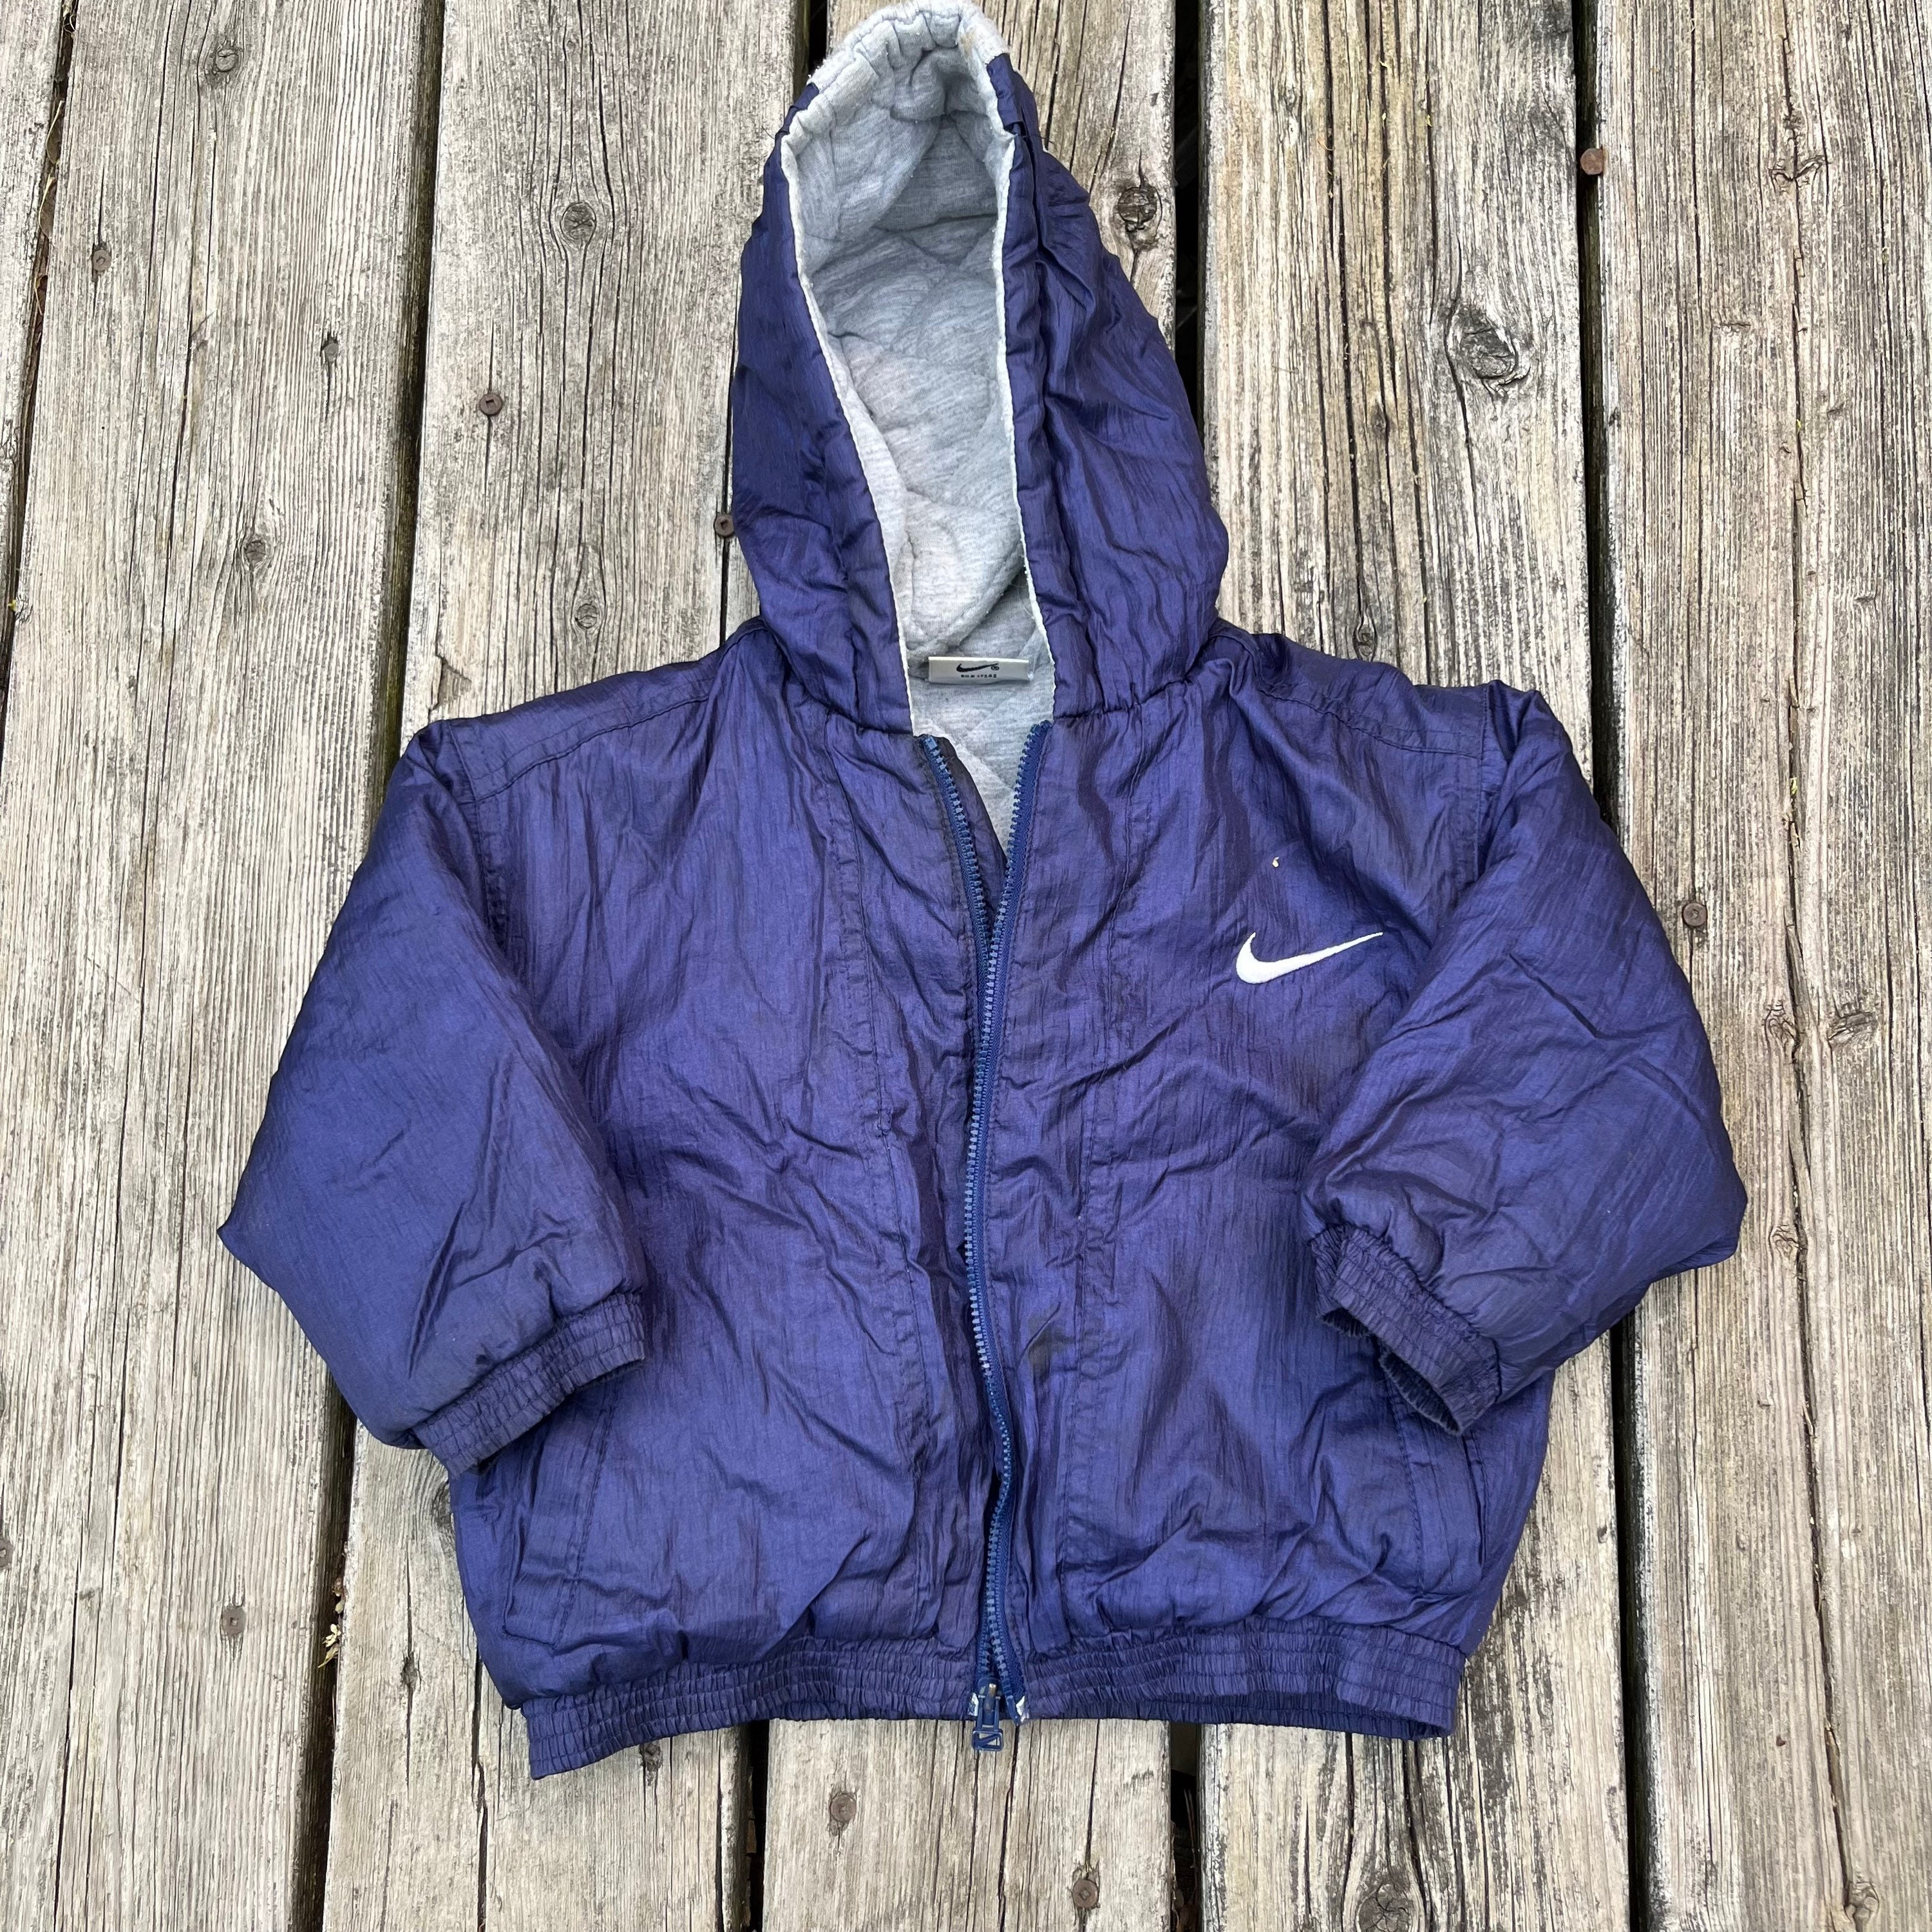 Nike Zip Jacket - Etsy Canada